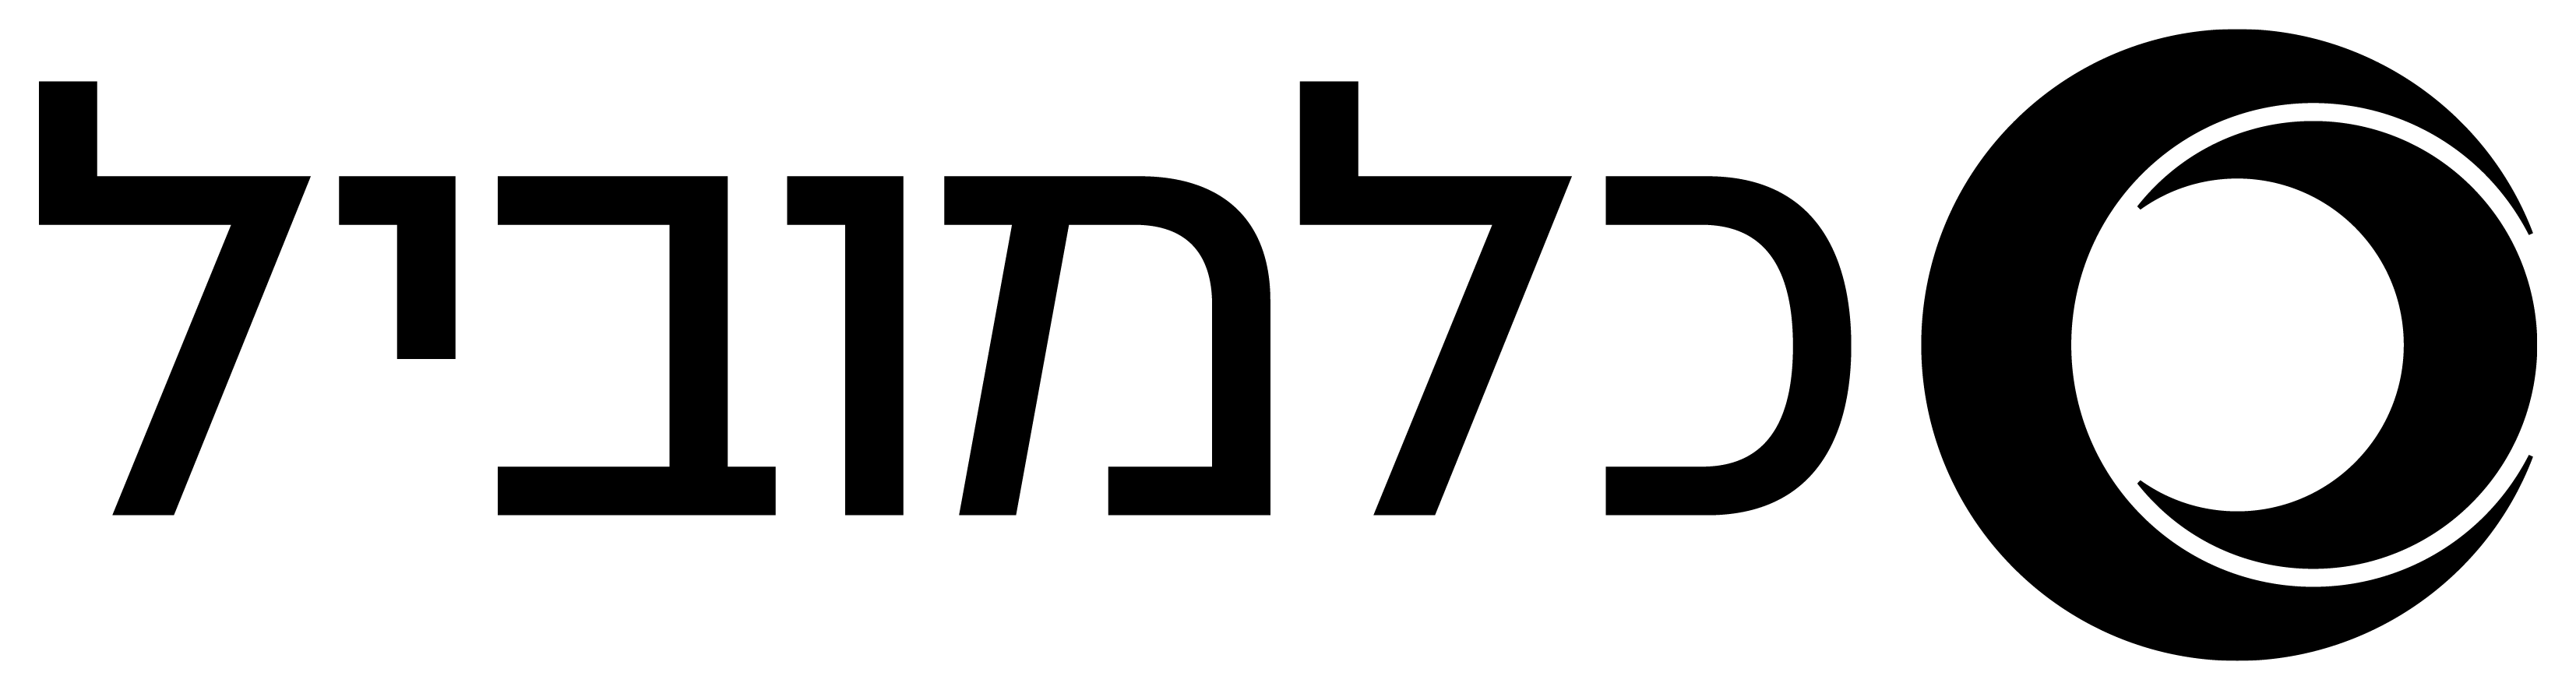 colmobil-logo-black